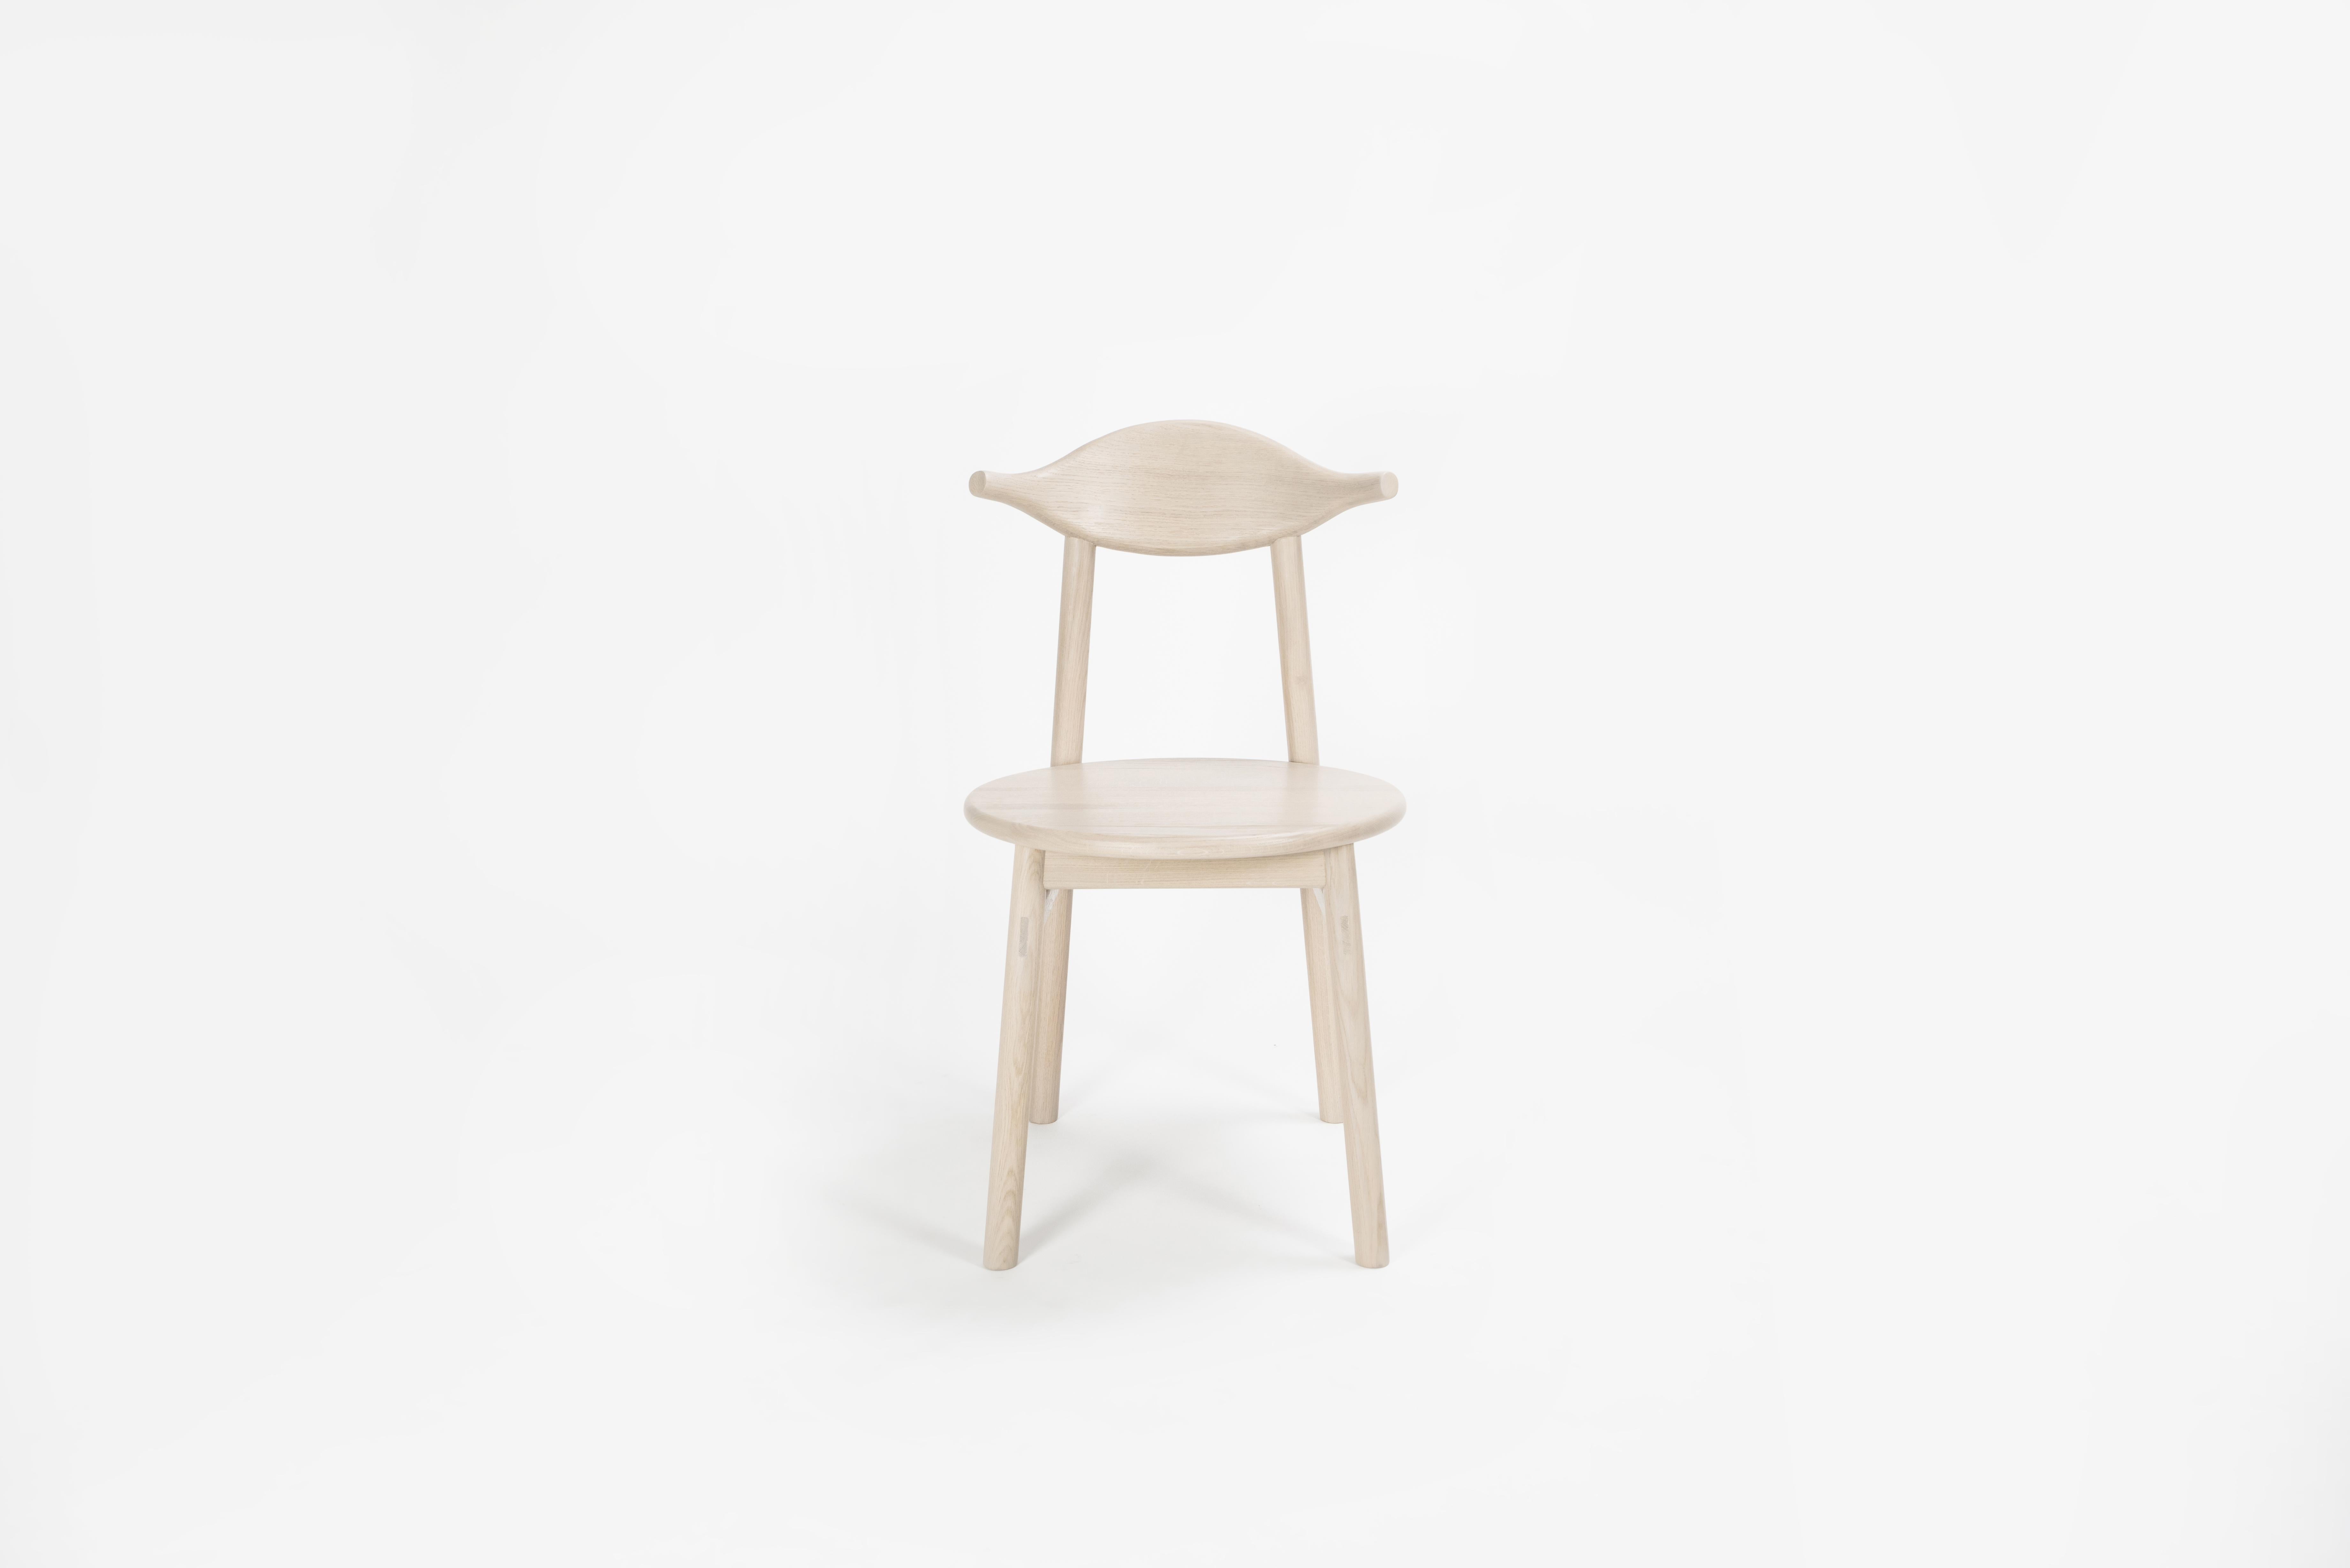 Sun at Six ist ein zeitgenössisches Möbeldesign-Studio, das mit traditionellen chinesischen Tischlermeistern zusammenarbeitet, um unsere Stücke in Handarbeit zu fertigen, wobei traditionelle Tischlerarbeiten verwendet werden. Der Stuhl Ember ist